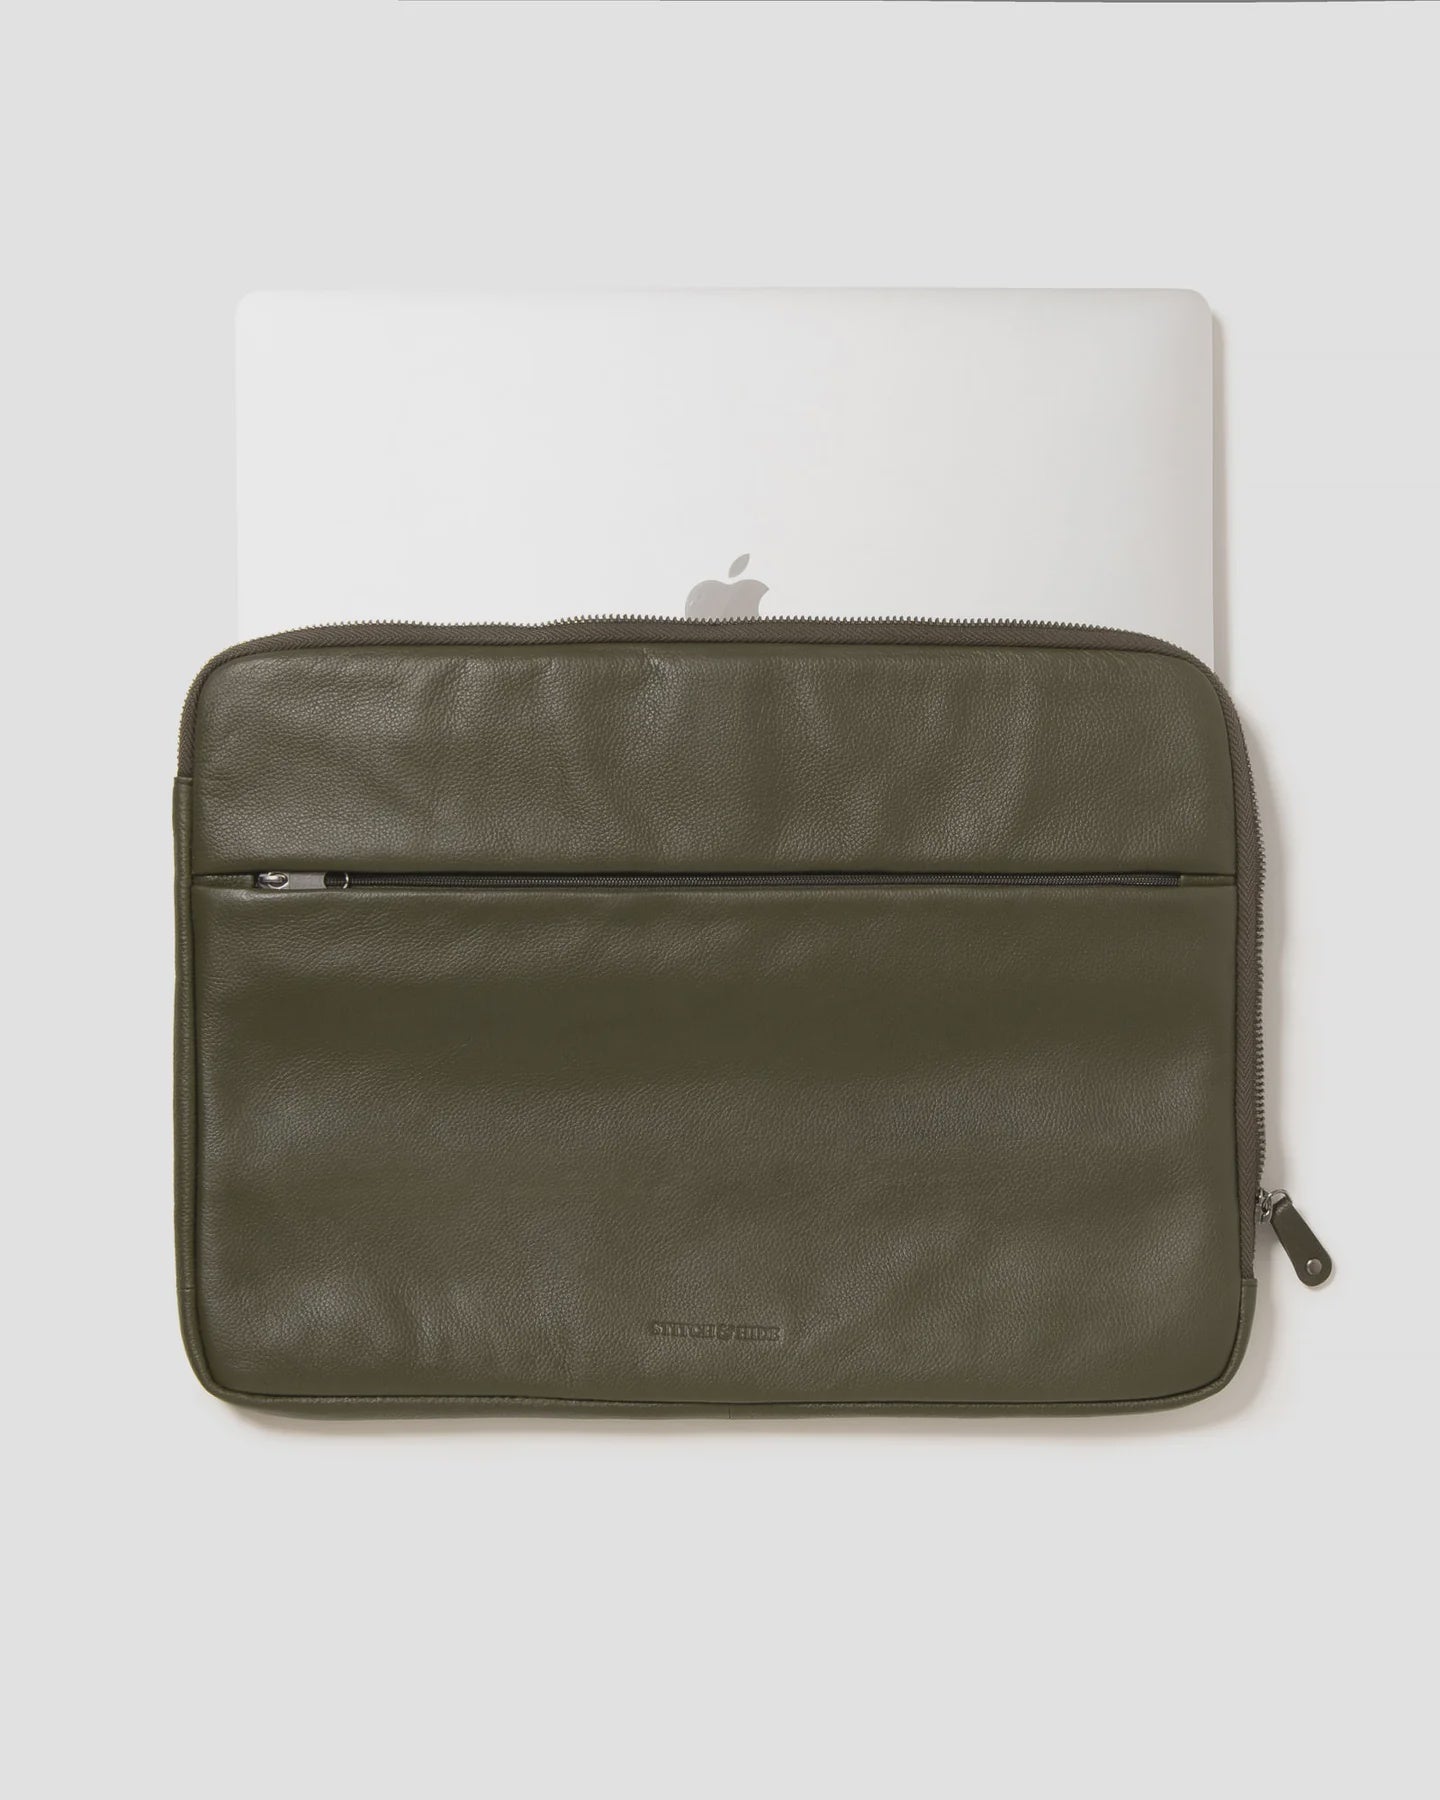 Stitch & Hide Remy Laptop Case - Olive/15"